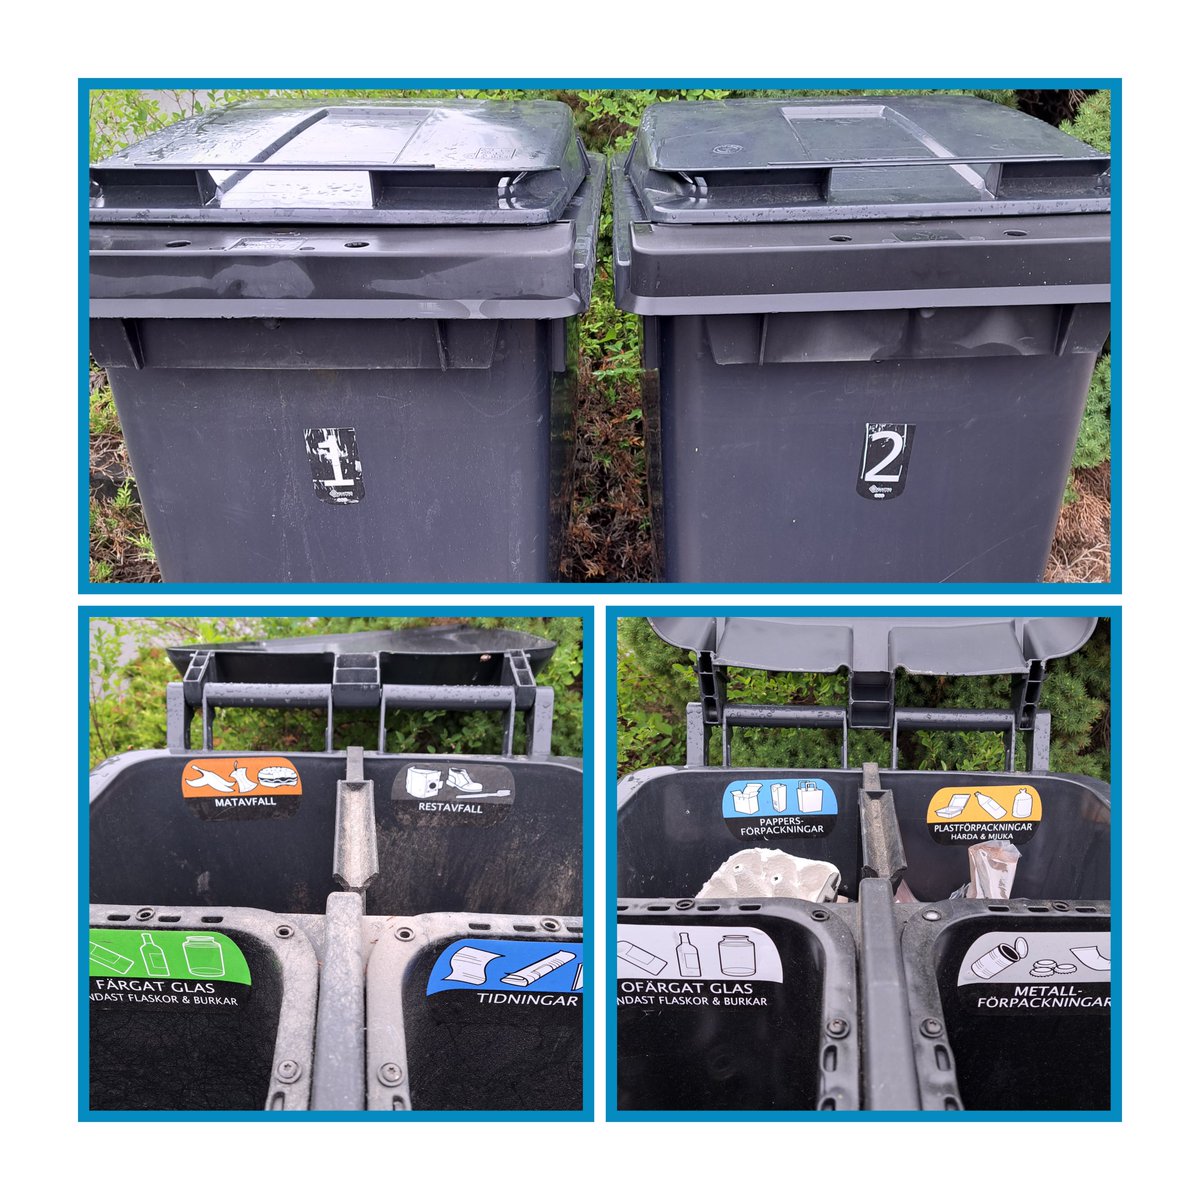 Mülltrennung finde ich hier 🇸🇪 auch genial. Von Gemeinde zu Gemeinde unterschiedlich. 
Dazu gibt's noch Stationen im Ort, wo man größere Mengen kostenfrei hinbringen kann. Ebenso riesige Recyclinghöfe, die für jeden Abfall kostenfrei sind.